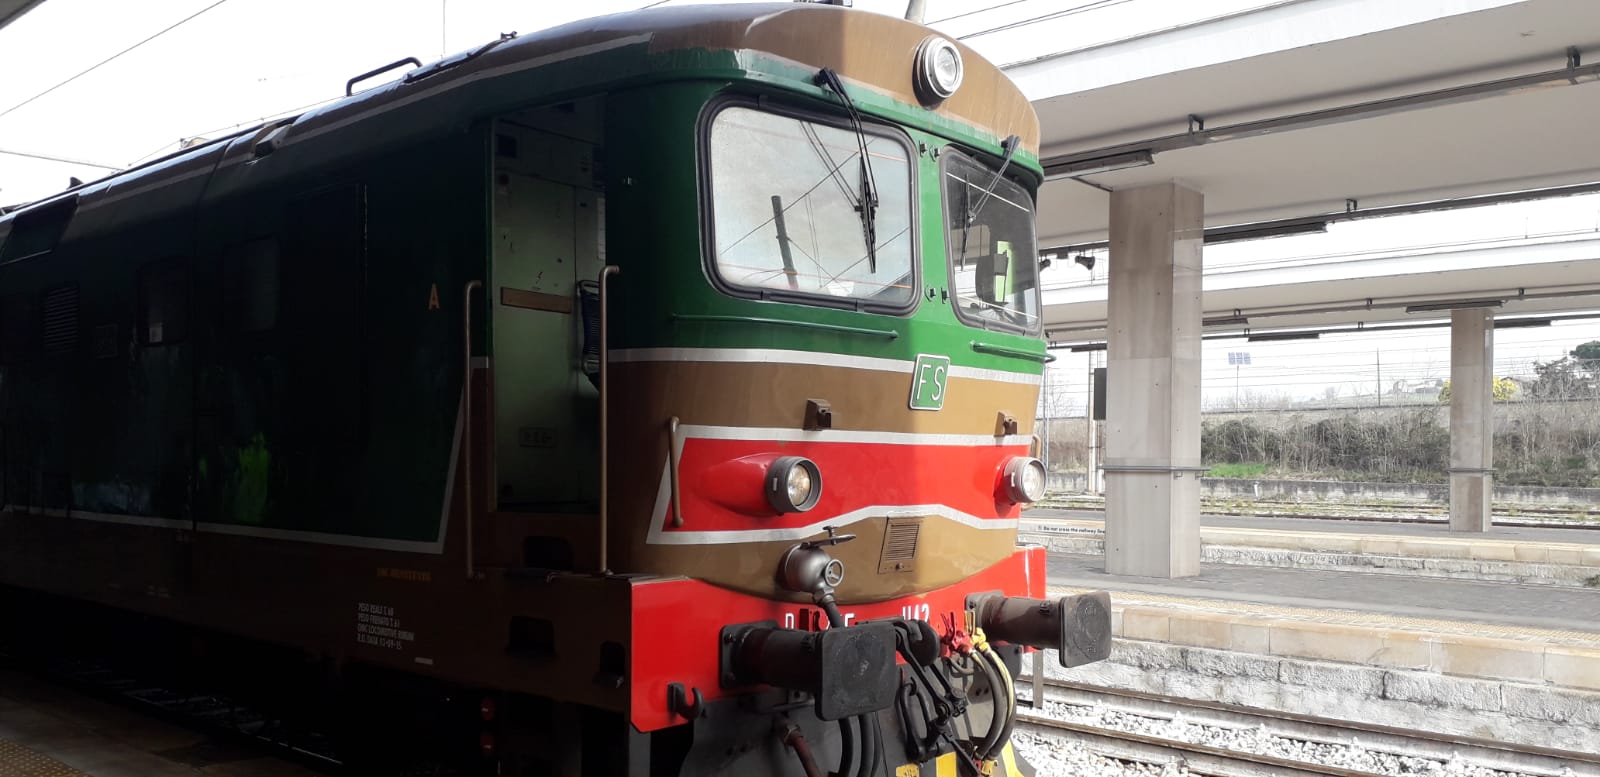 Treno turistico-didattico, domani il primo viaggio sulla tratta Avellino-Taurasi